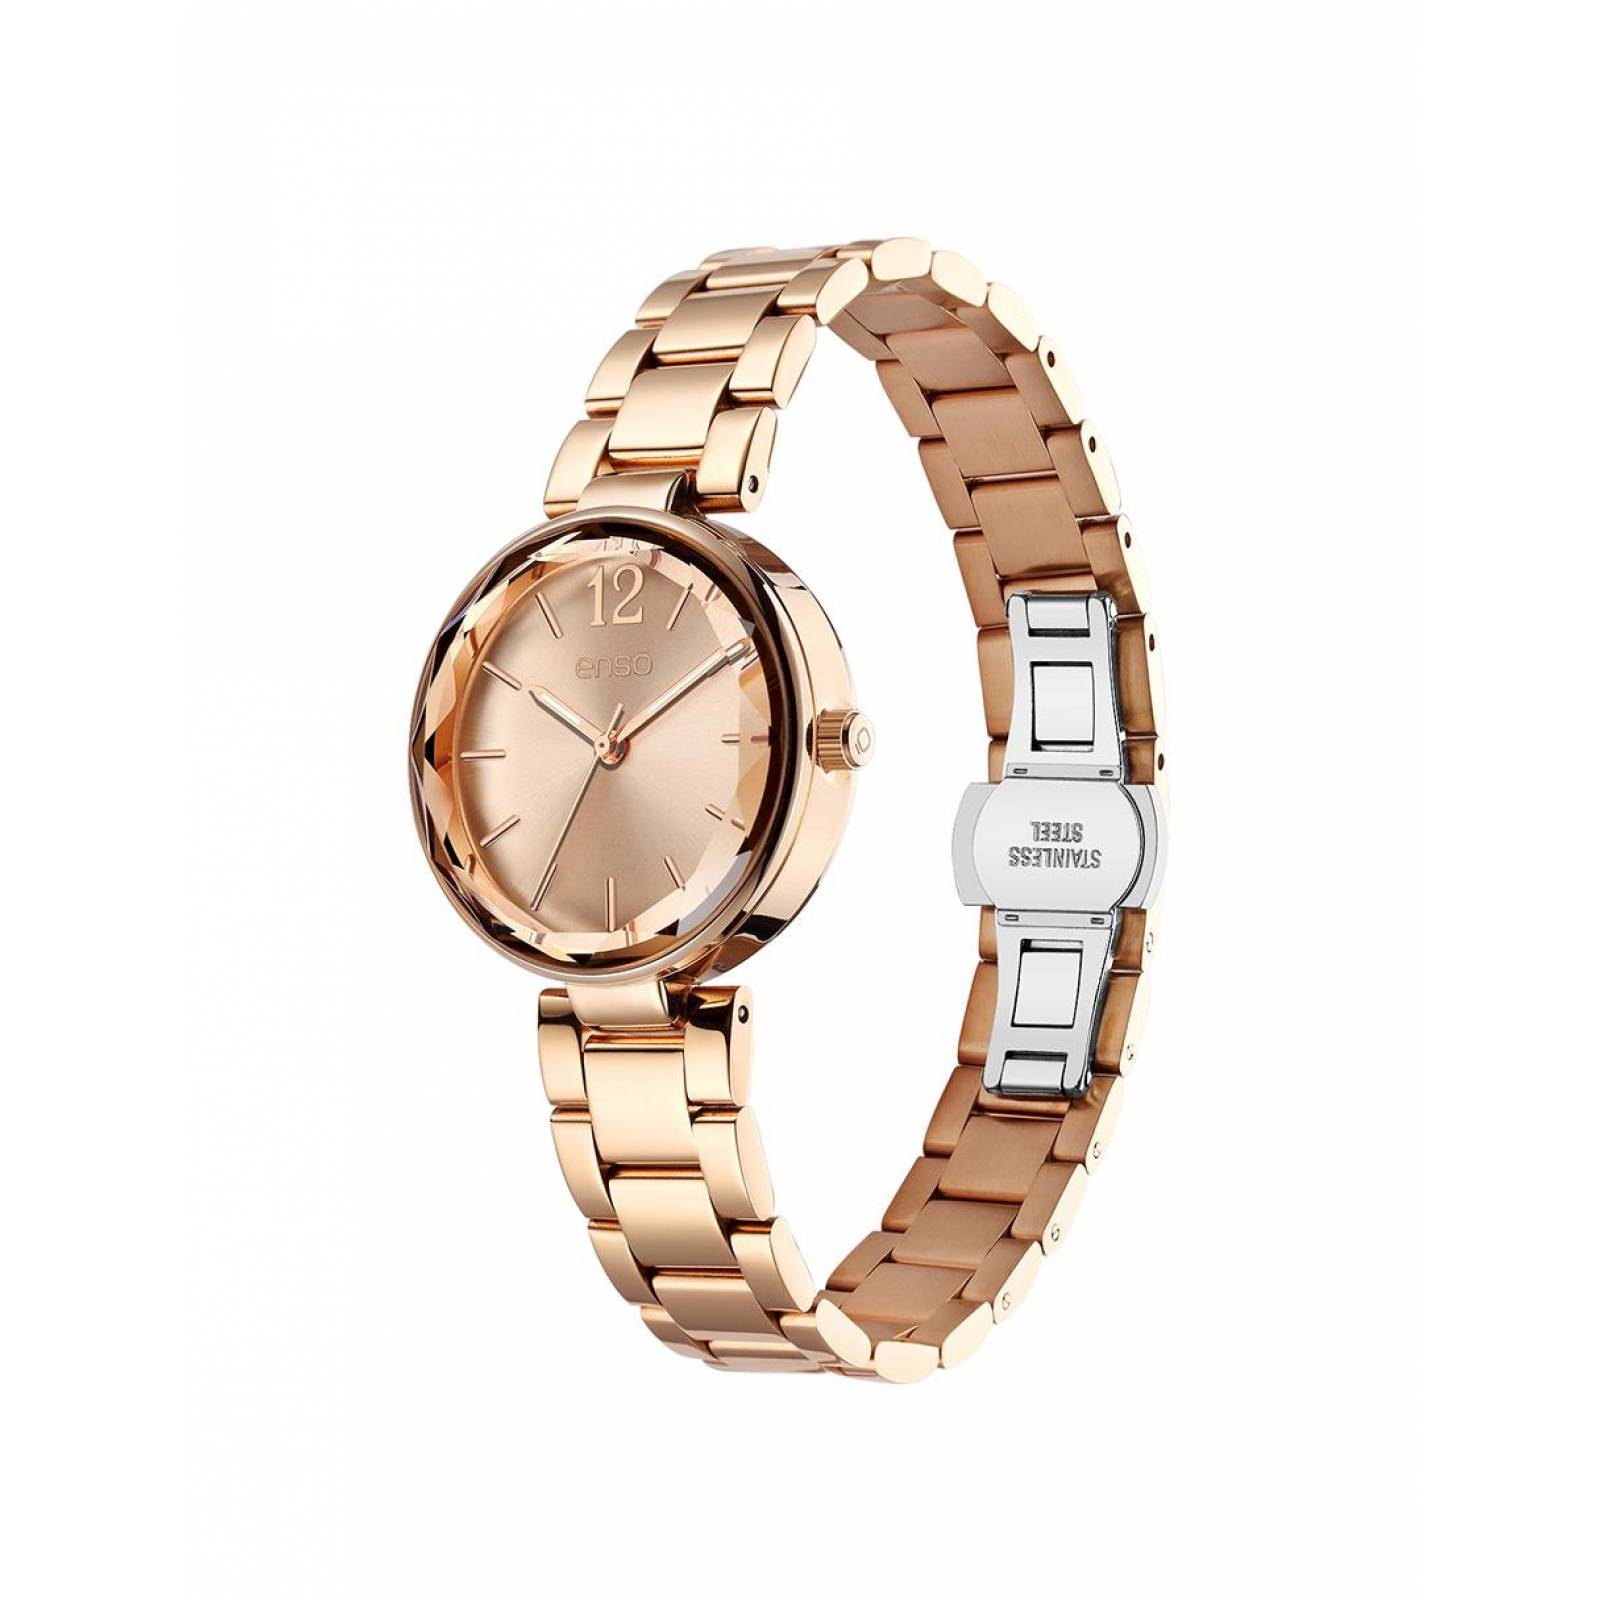 Reloj de Pulsera Enso para Mujer Oro Rosa EW9309L2 